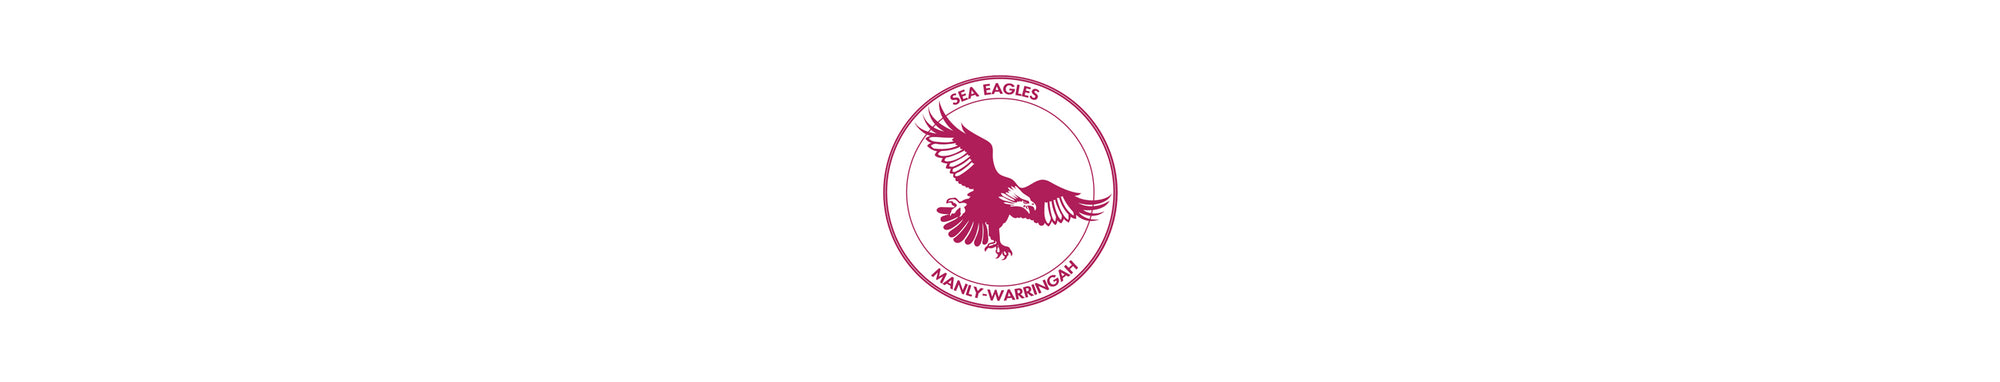 Retro Manly Sea Eagles